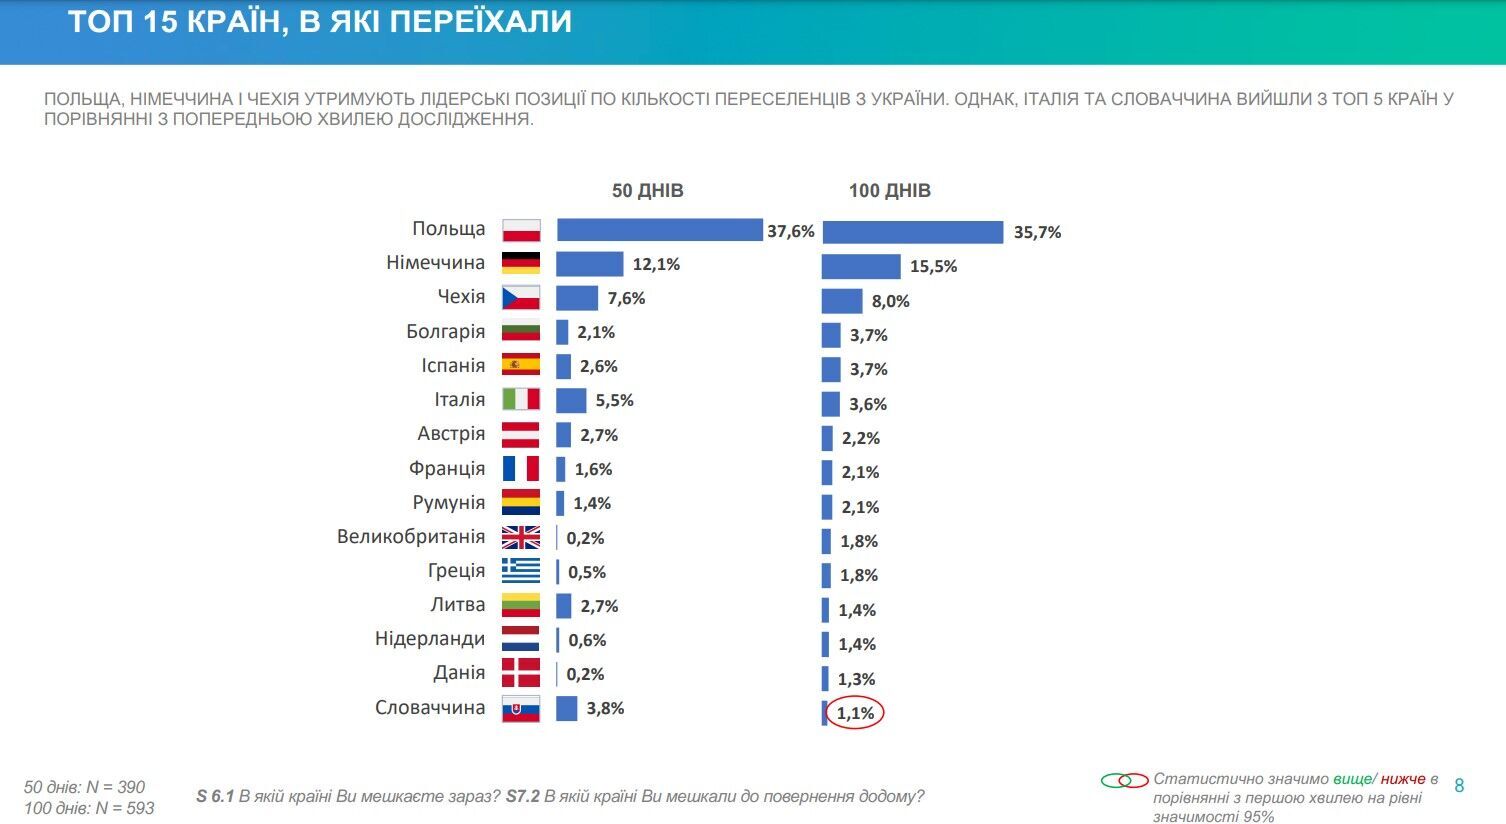 Вимушені переселенці стали частіше переїжджати до центральних областей України, – результати опитування